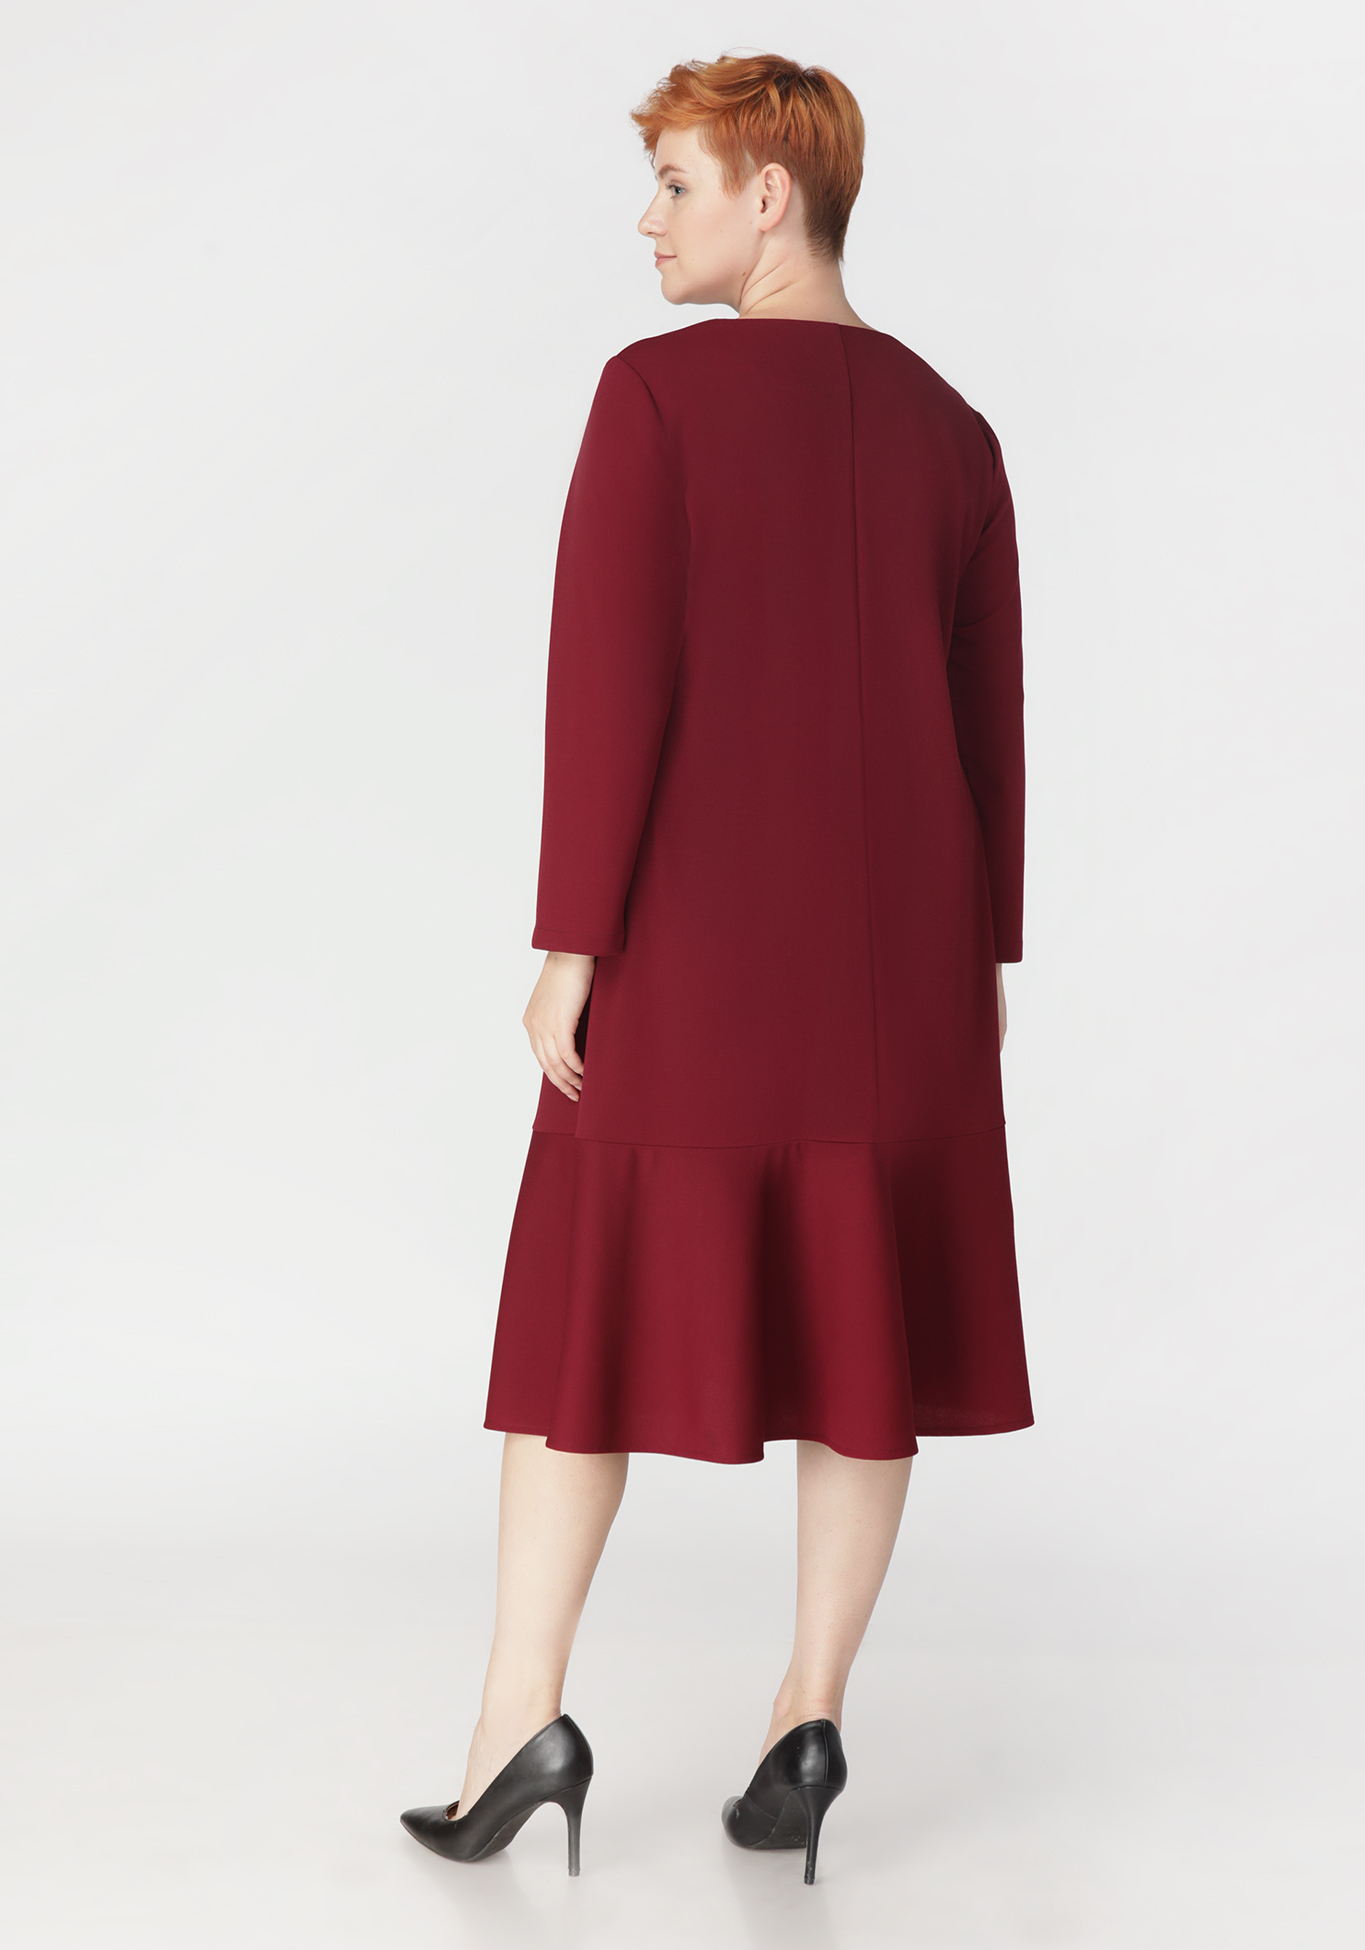 Платье "Восхитительная грация" Bianka Modeno, размер 50, цвет красный - фото 3